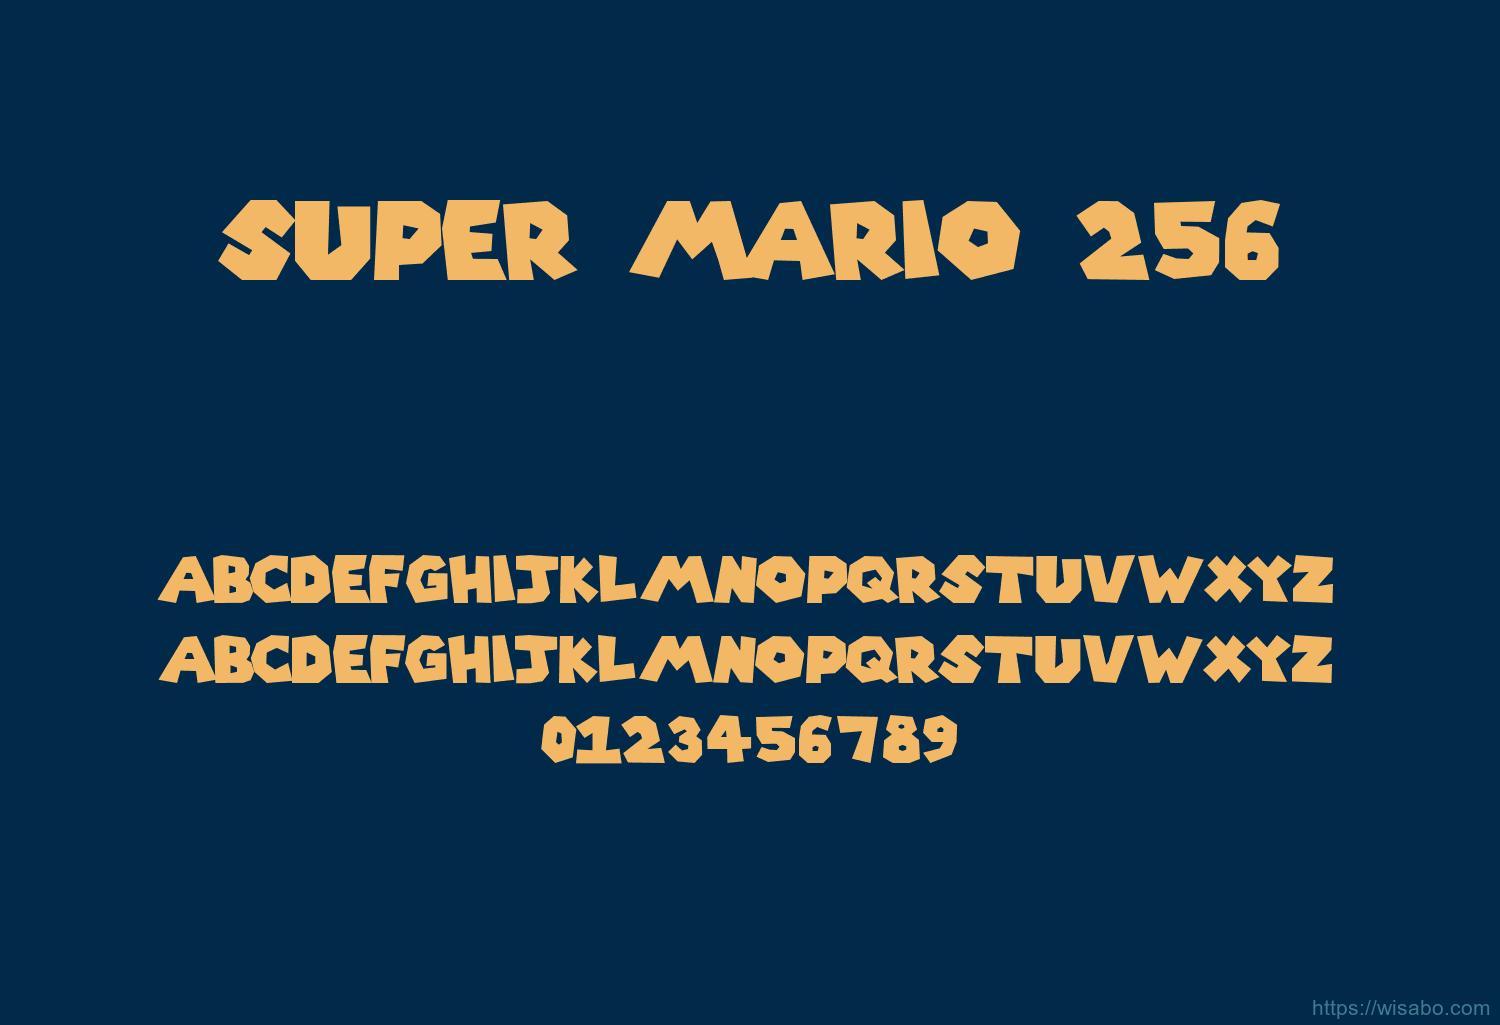 Super Mario 256